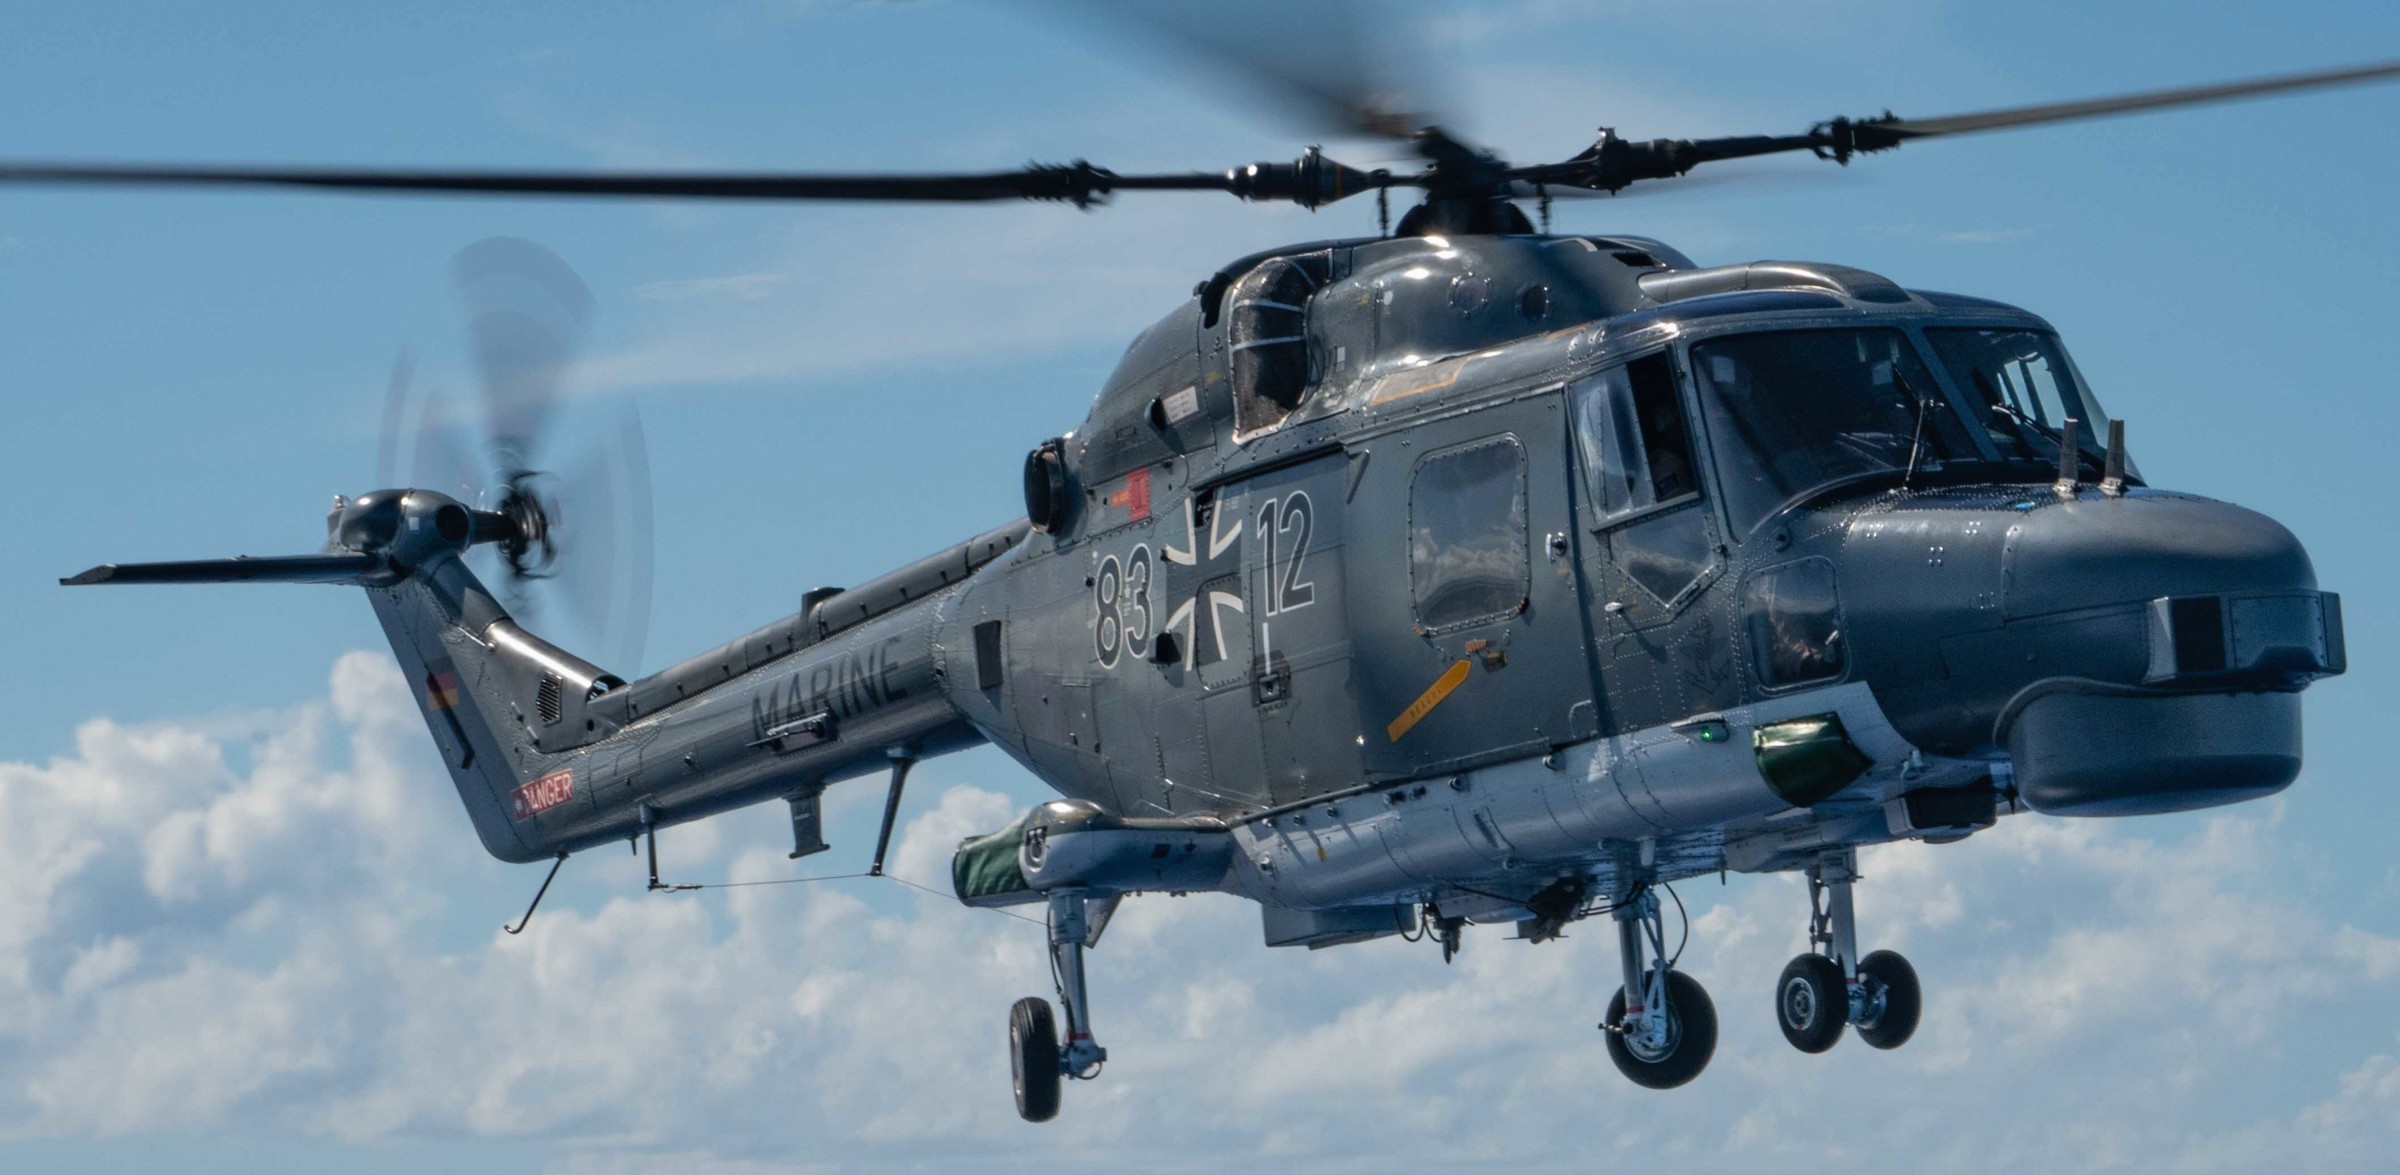 sea lynx mk.88a westland naval helicopter german navy deutsche marine 42